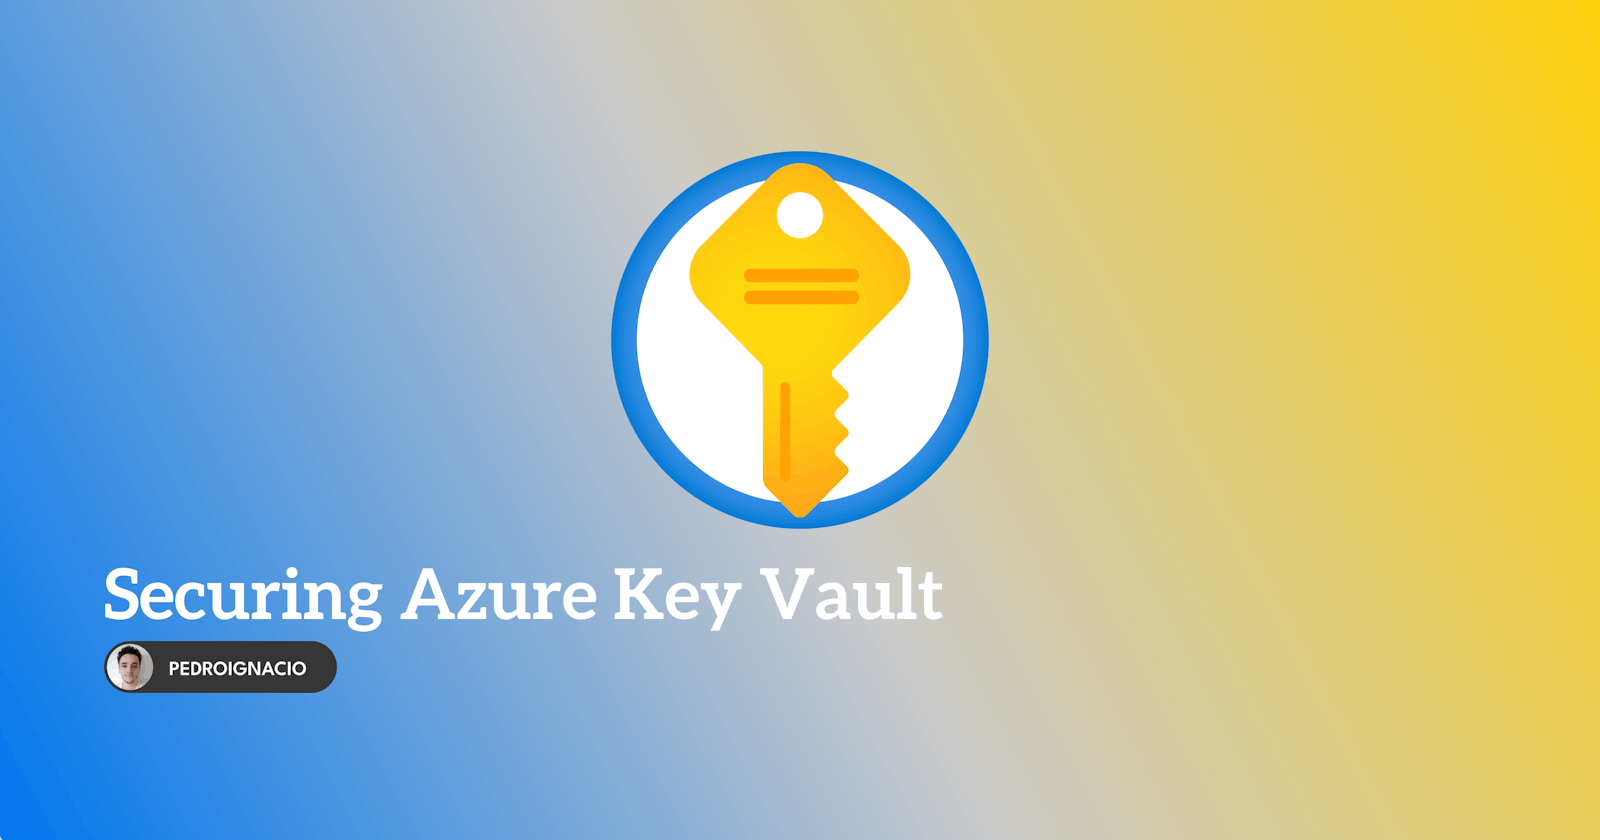 Uso seguro do Azure Key Vault